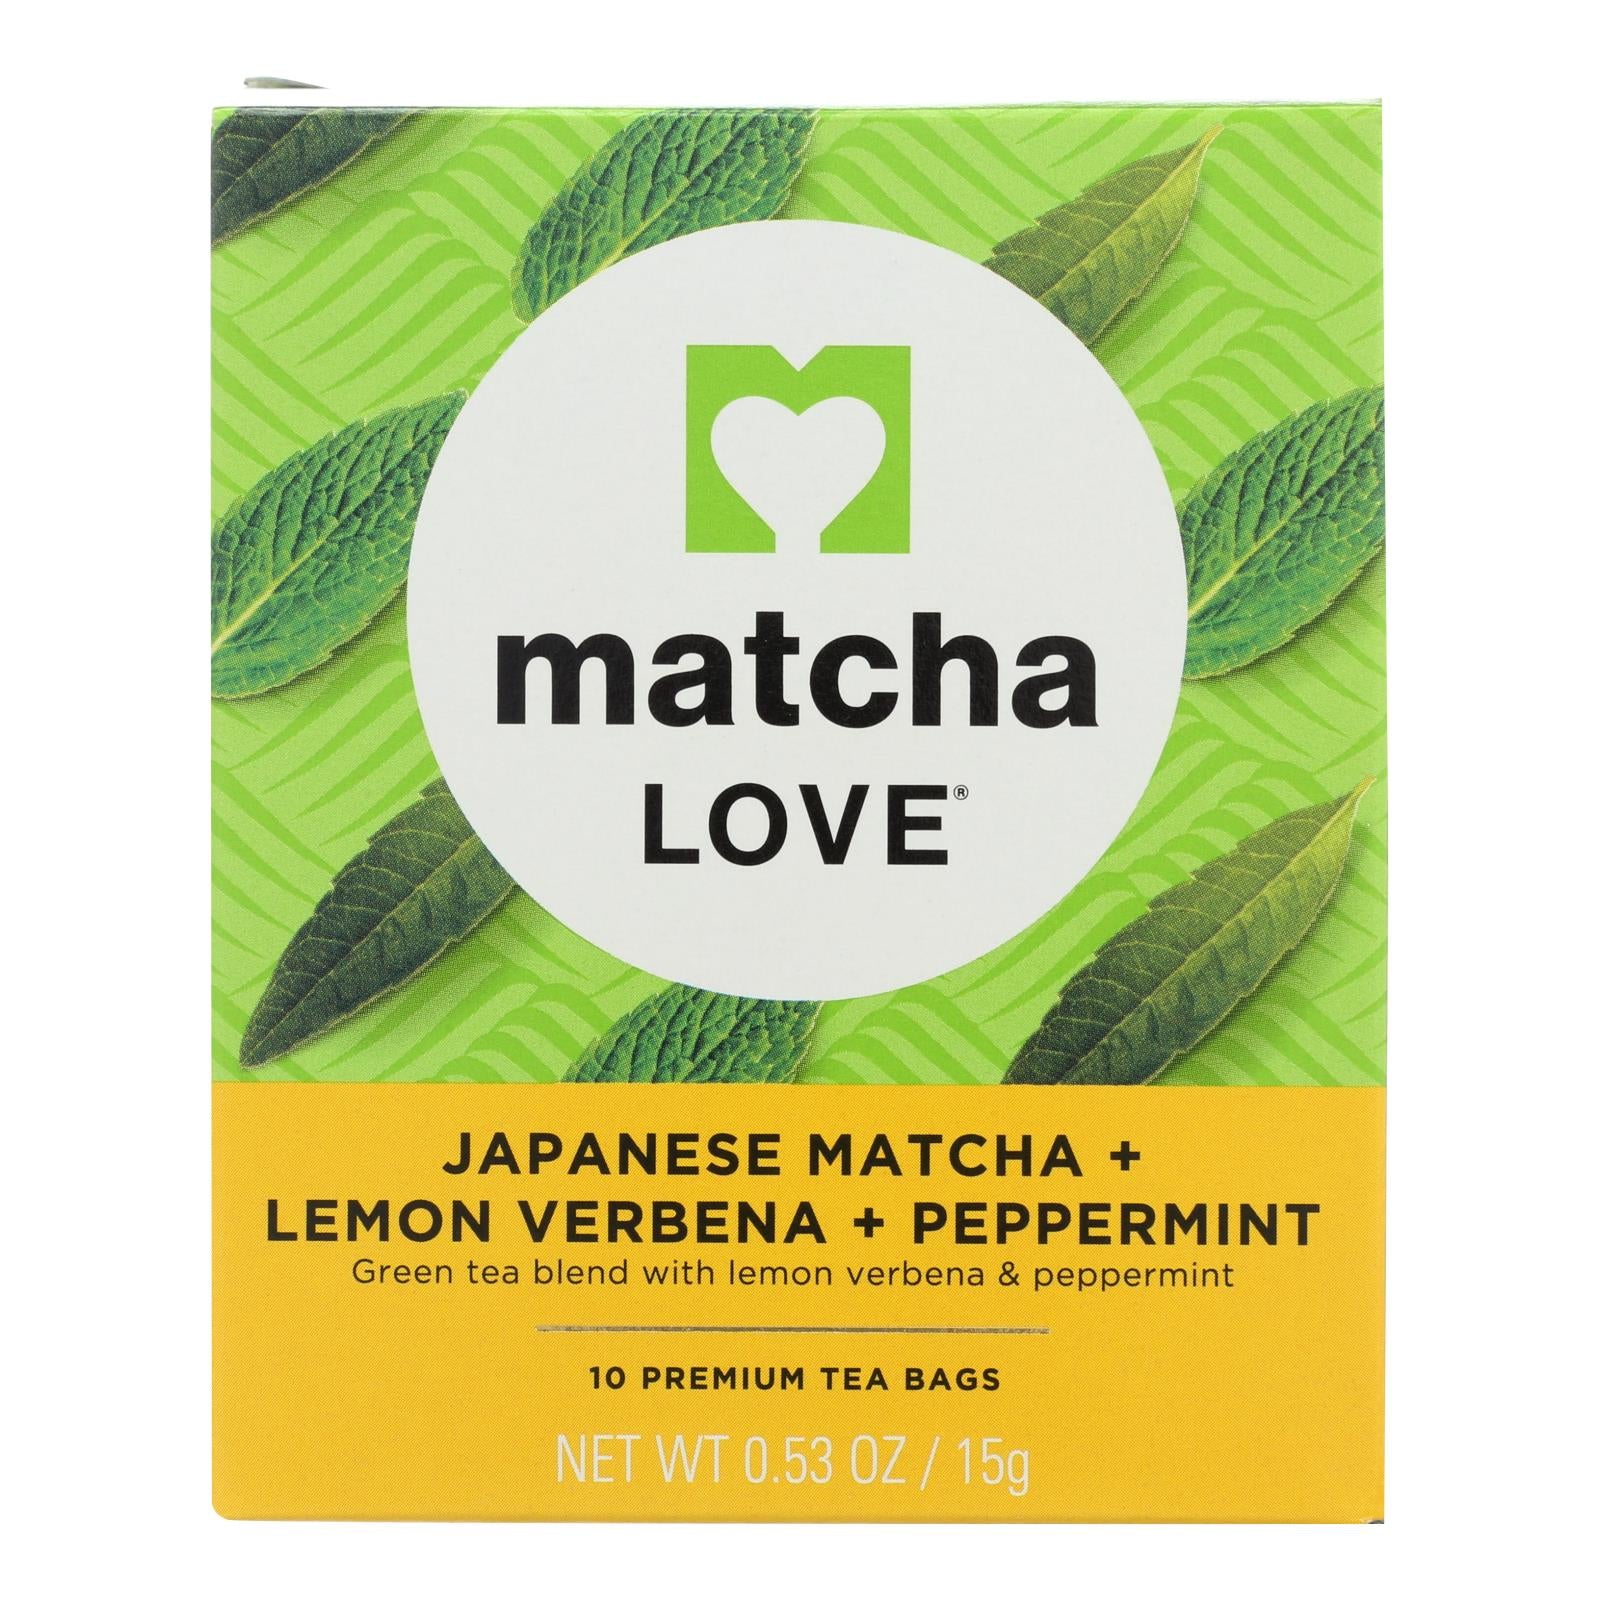 L'amour du matcha, Matcha Love Matcha japonais à la verveine citronnée et à la menthe poivrée - Carton de 6 - 10 SACS